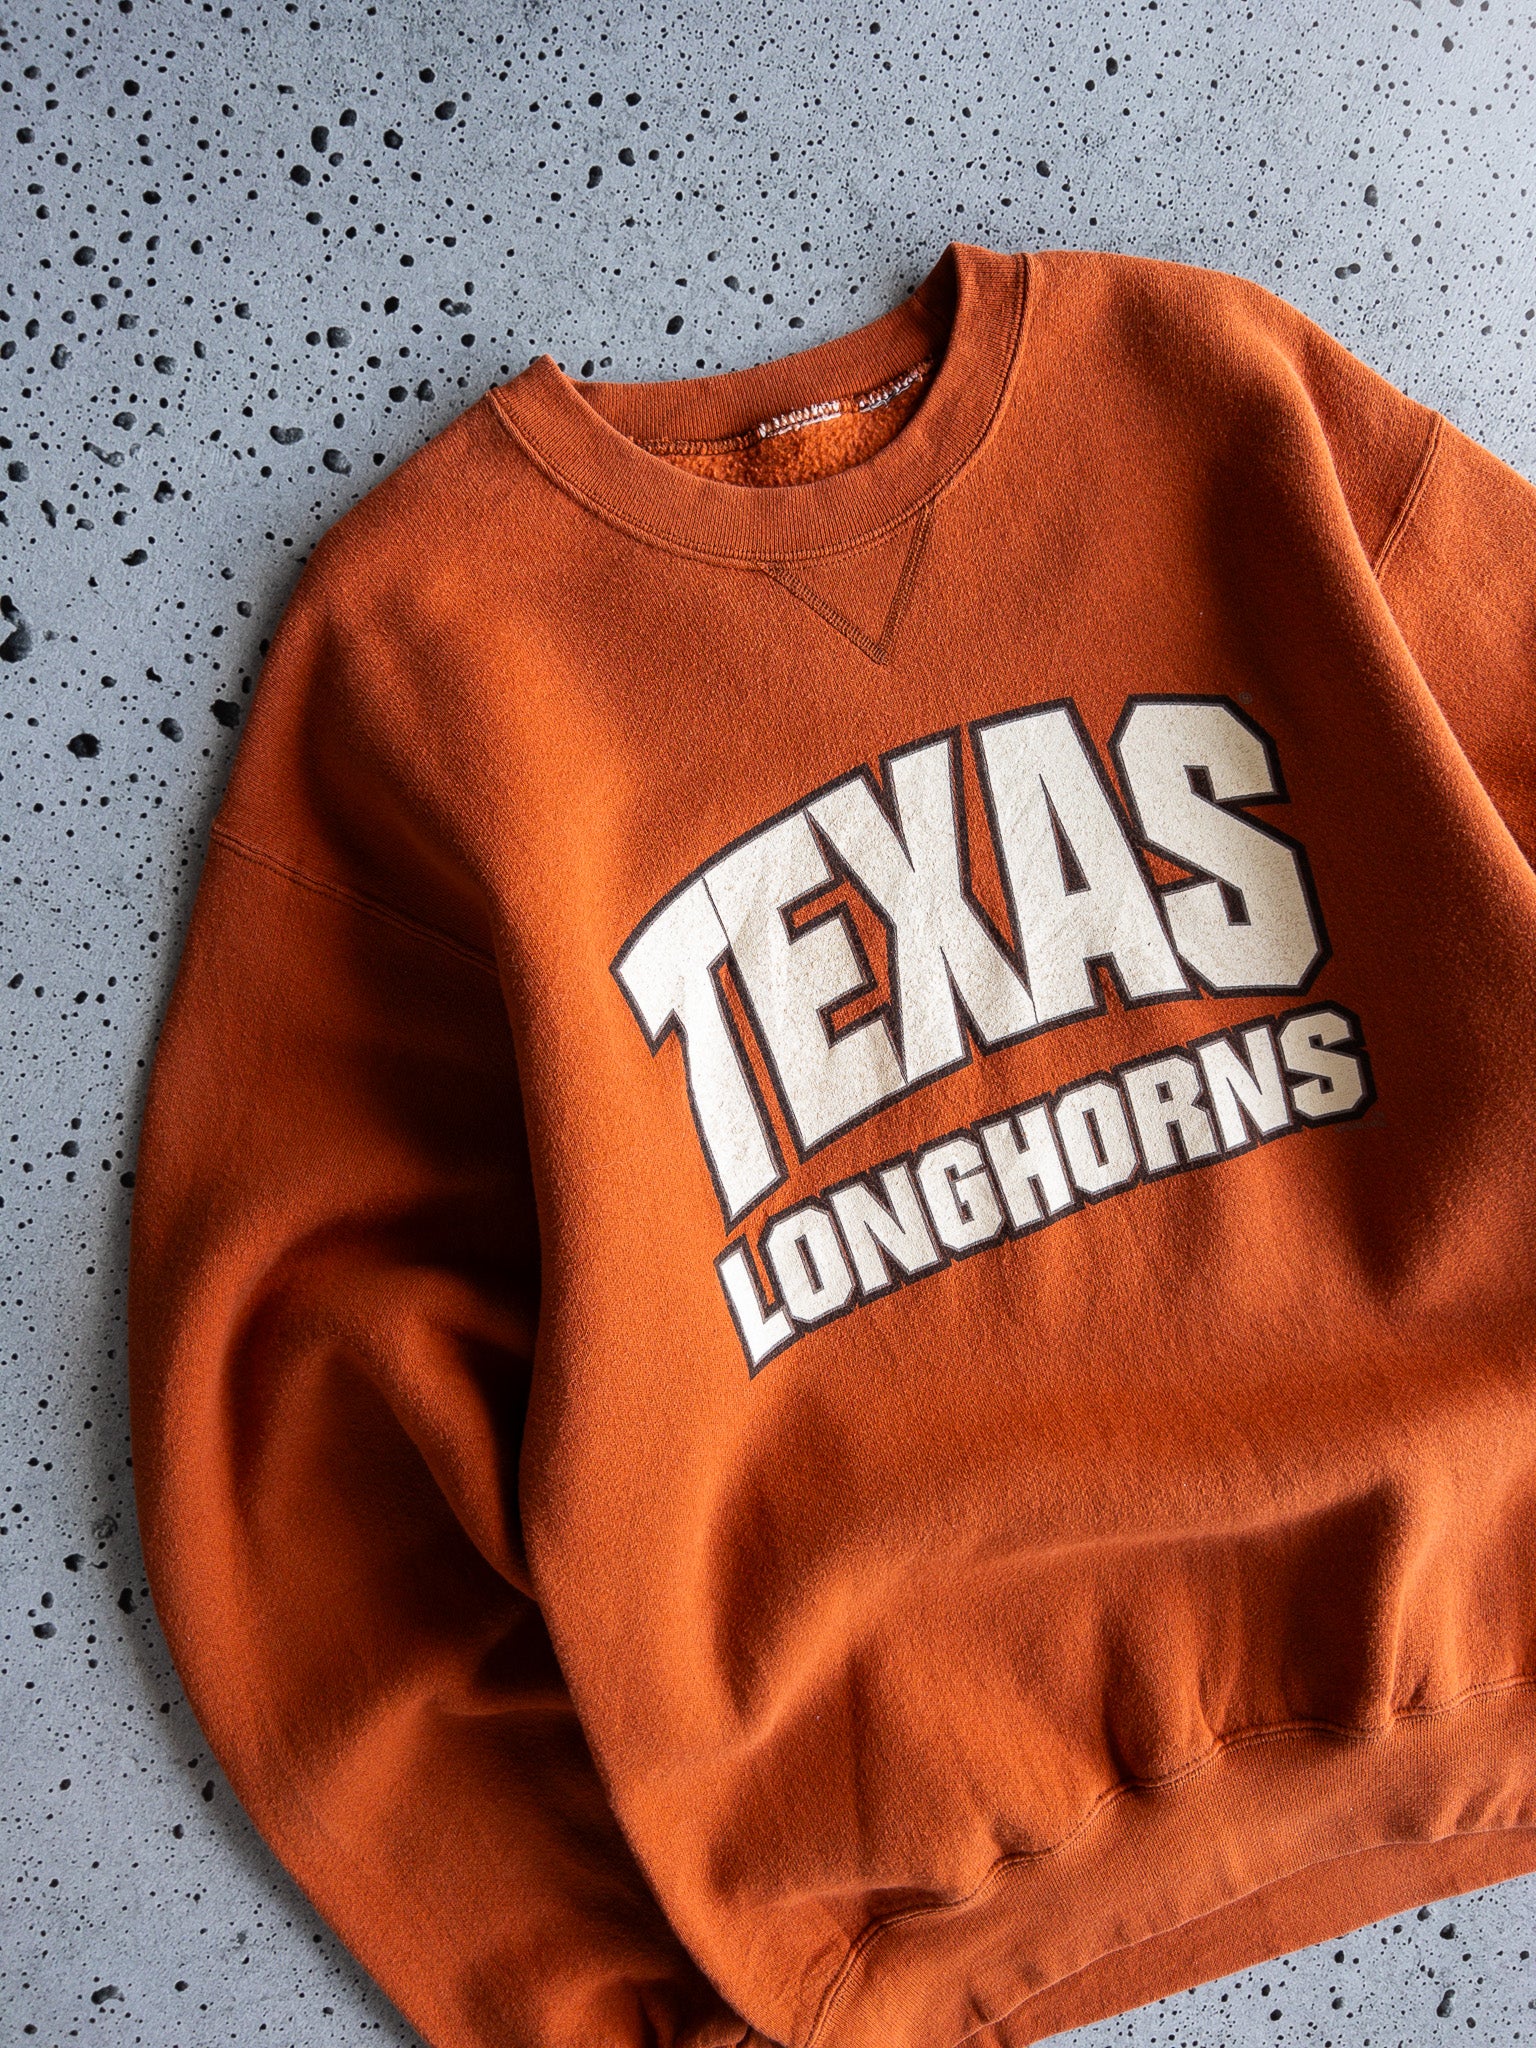 Vintage Texas Longhorns Sweatshirt (L)